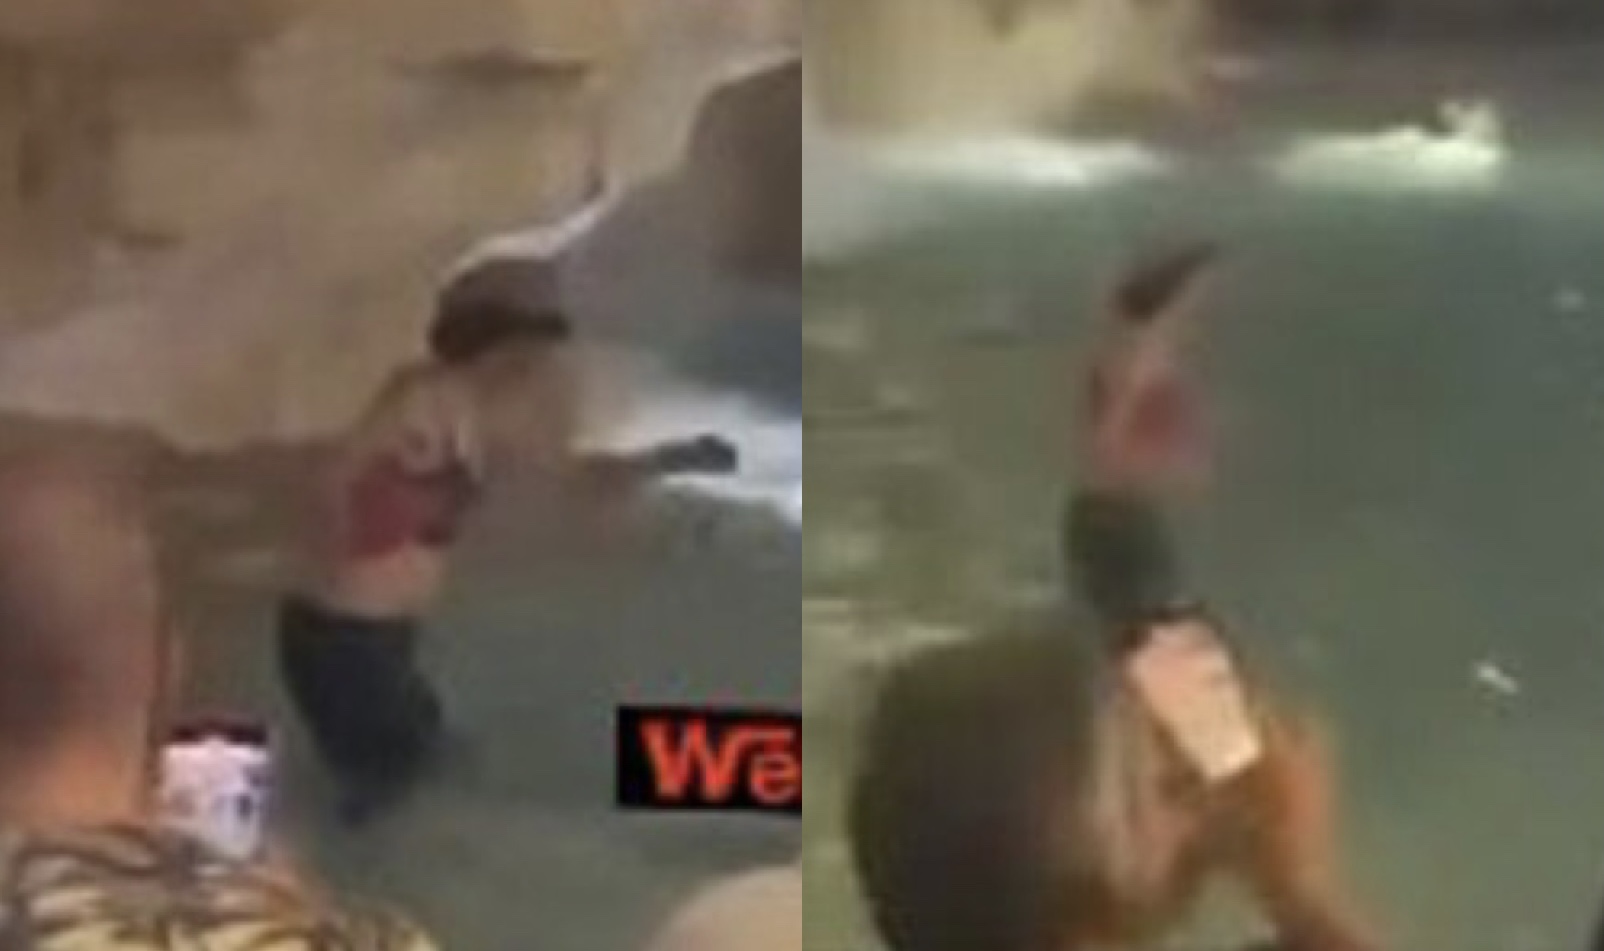 Gruaja lahet me sytjena në shatërvanin e Romës, sulmon edhe dy policë